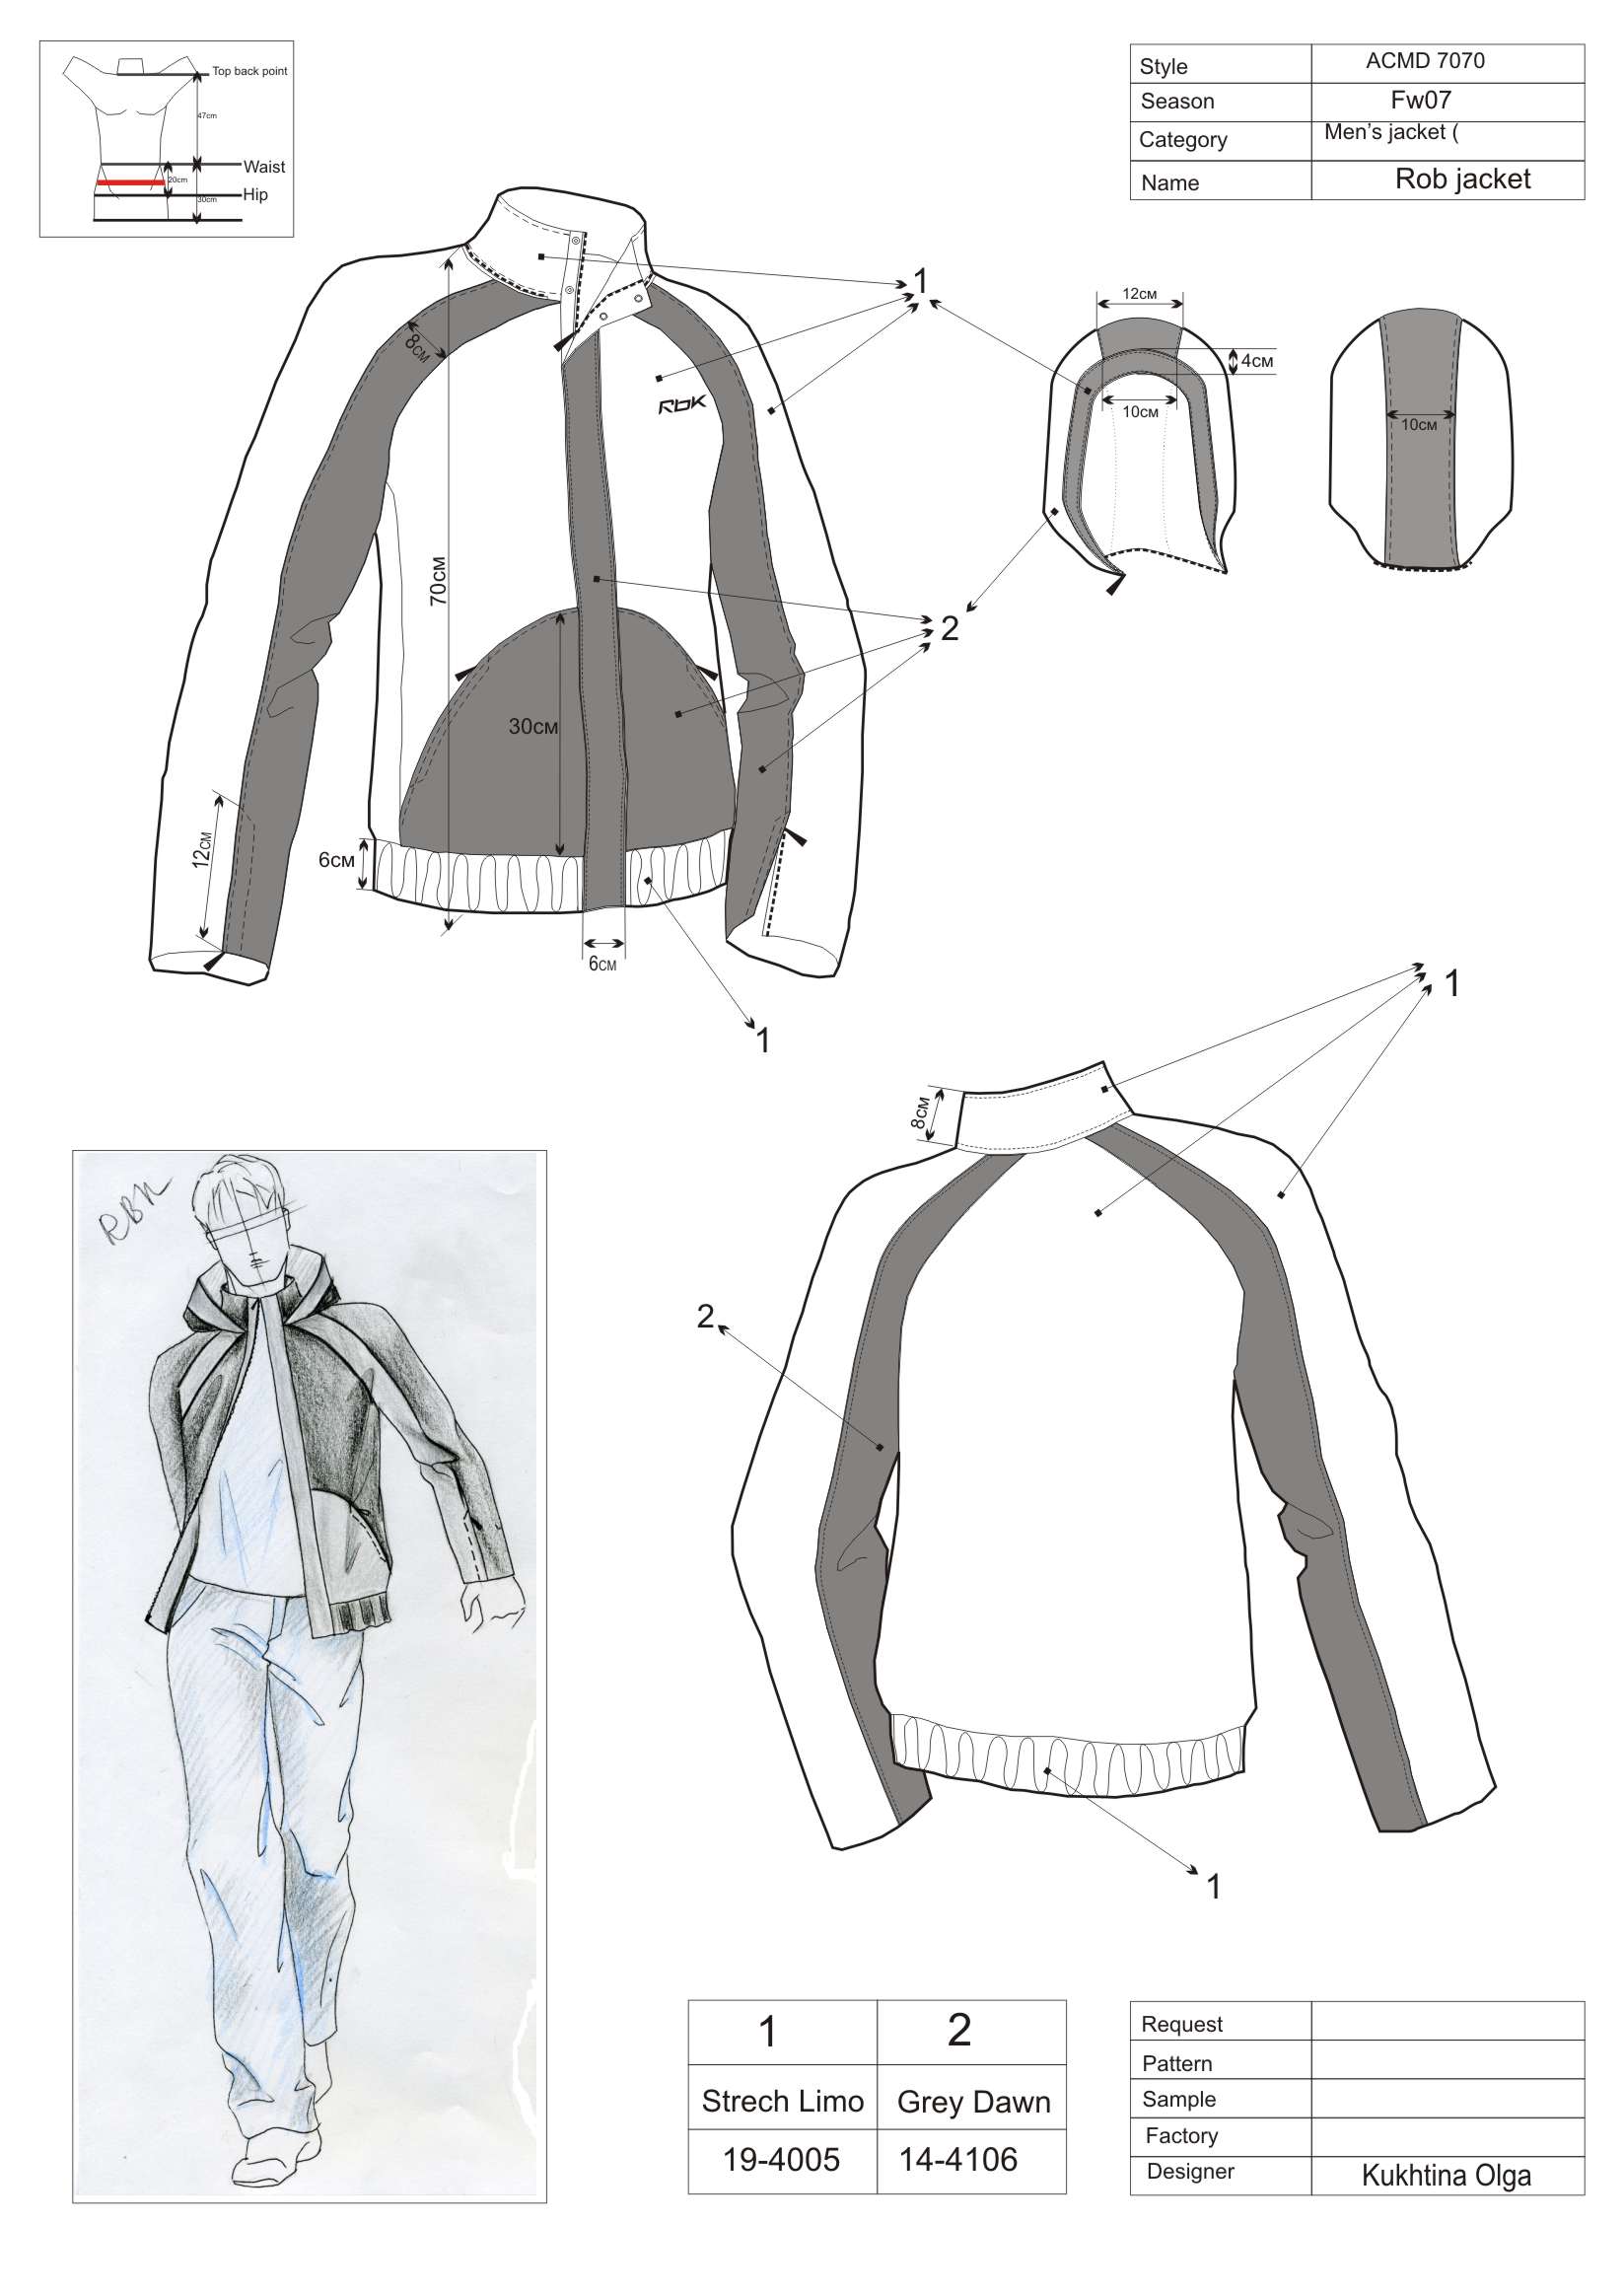 Технический эскиз куртки из коллеции FW 06/07 для RBK